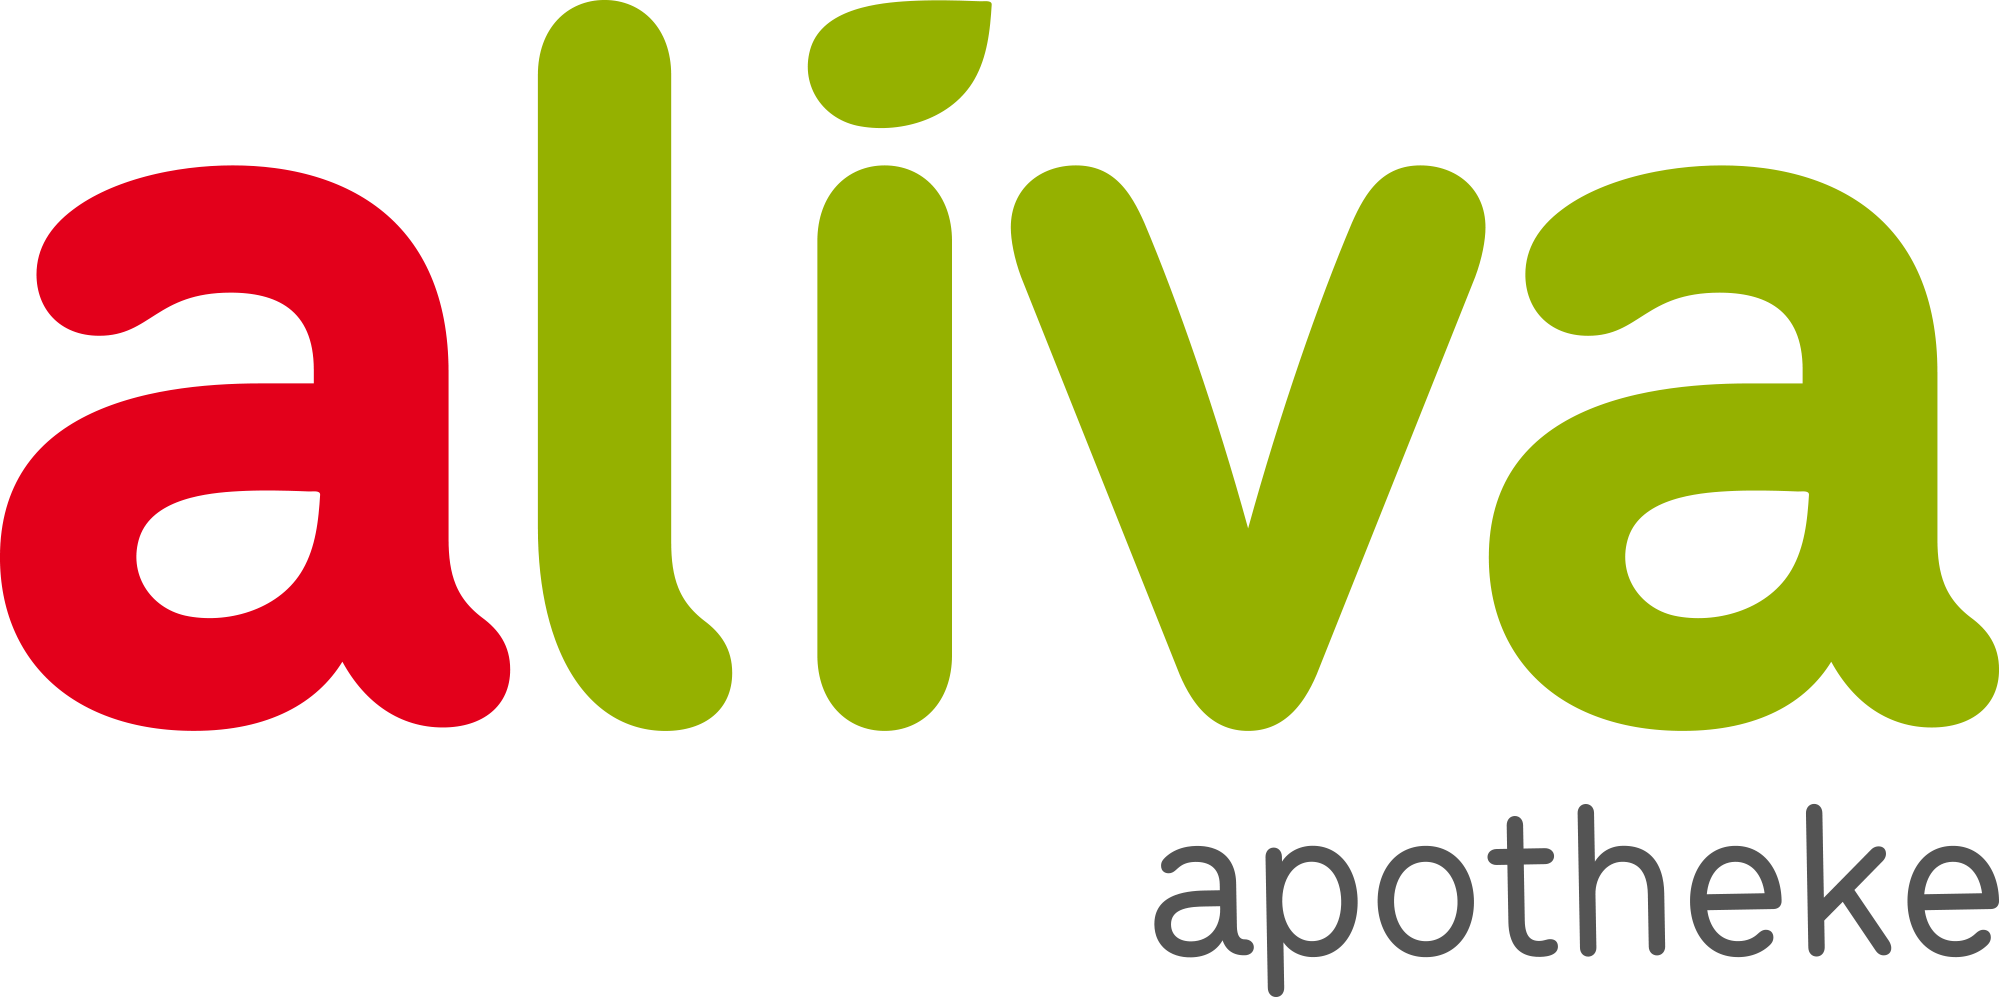 Online Apotheke Logo